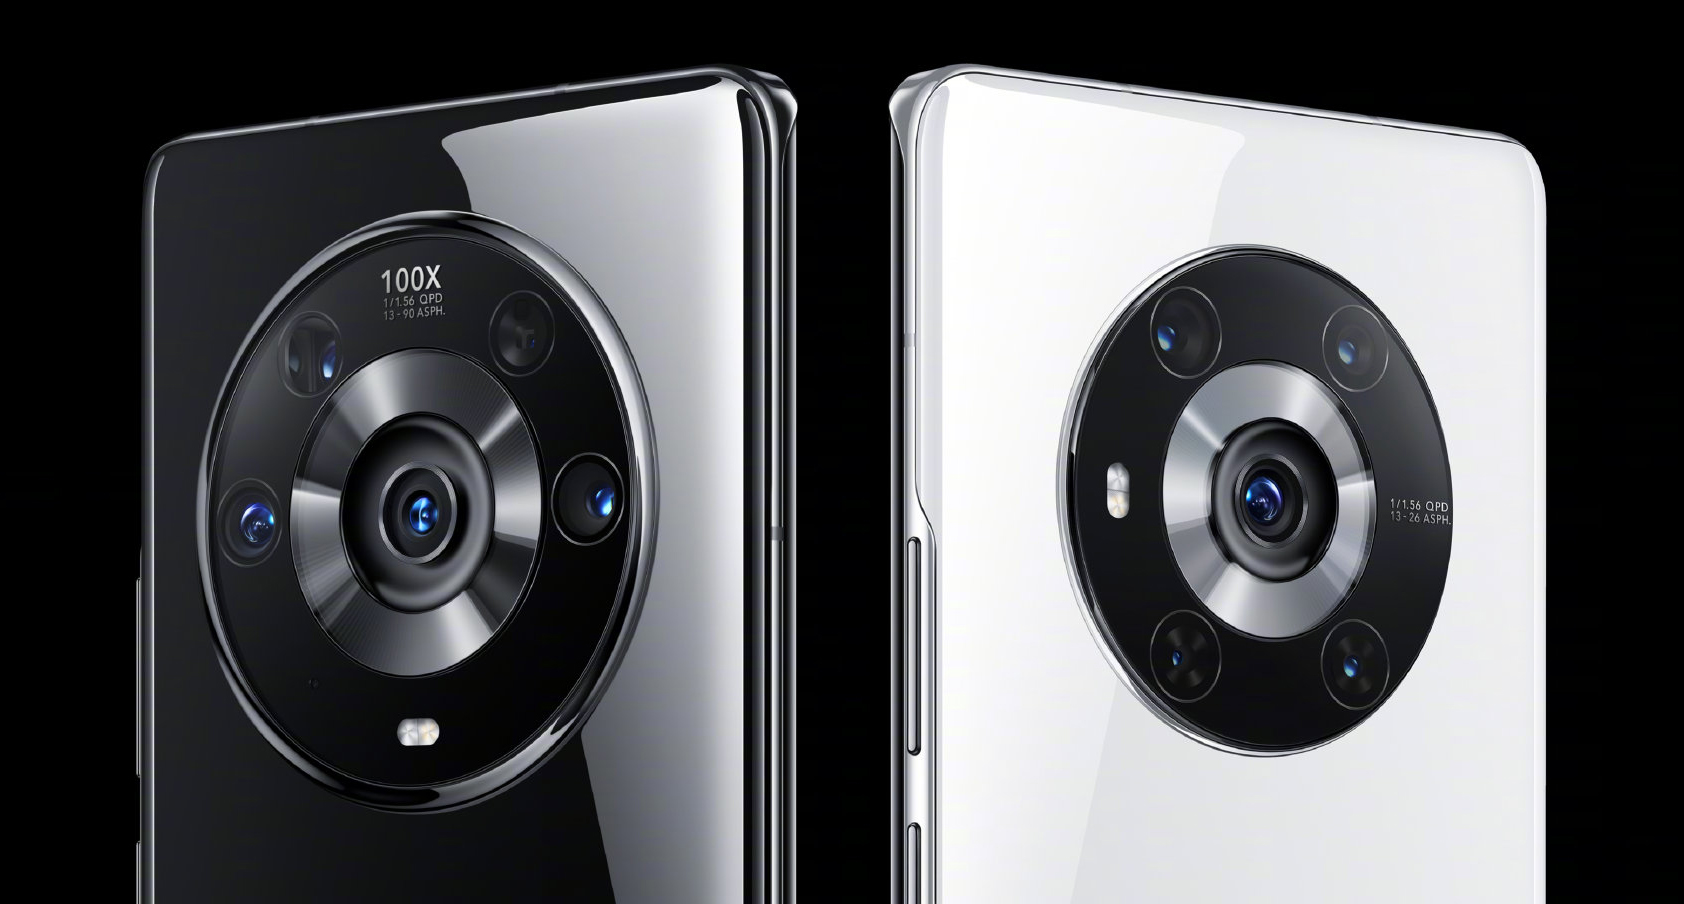 Snapdragon 8 Gen1, schermo WQHD+ a 120 Hz, quattro fotocamere da 50 MP e IP53/IP68 – Specifiche note di Honor Magic 4 Pro e Magic 4 Pro+